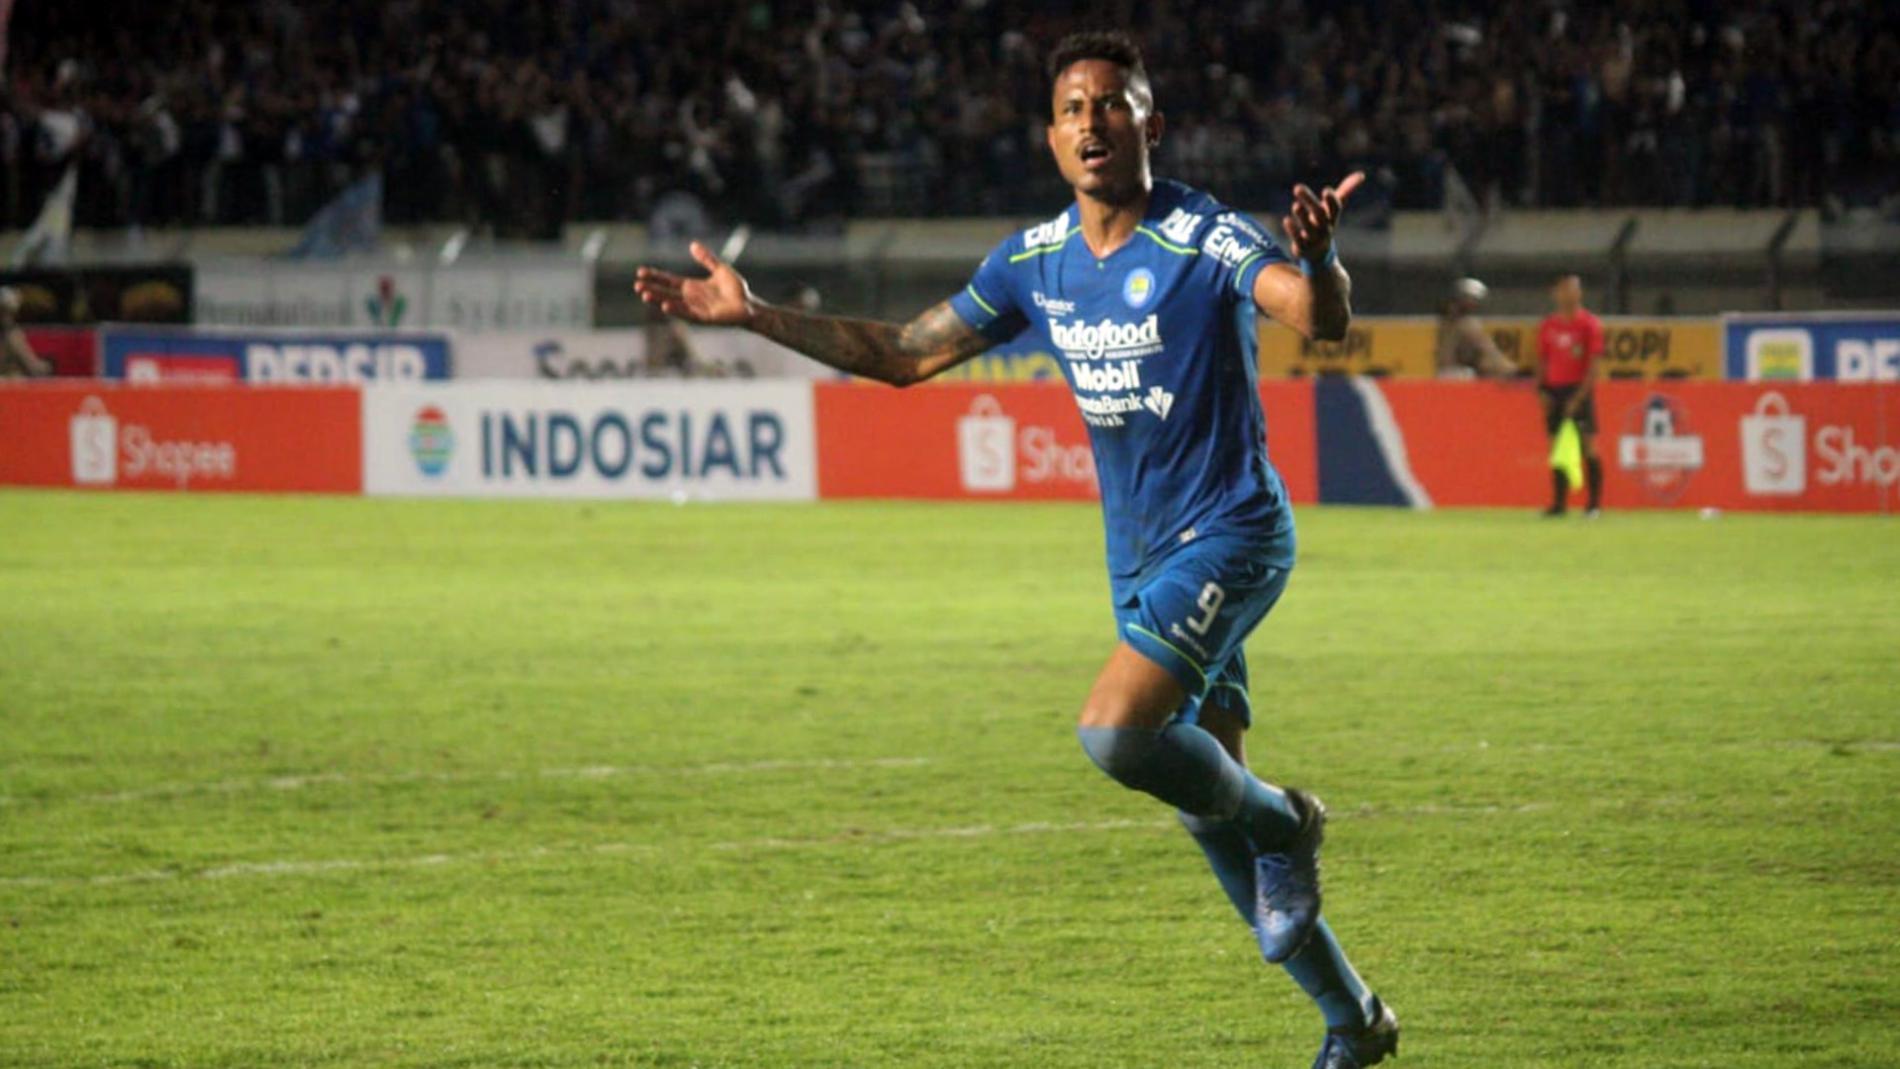 Wander Luiz Masuk dalam Catatan Sejarah Persib Bandung, Sukses Mencetak Dua Gol di Laga Perdana